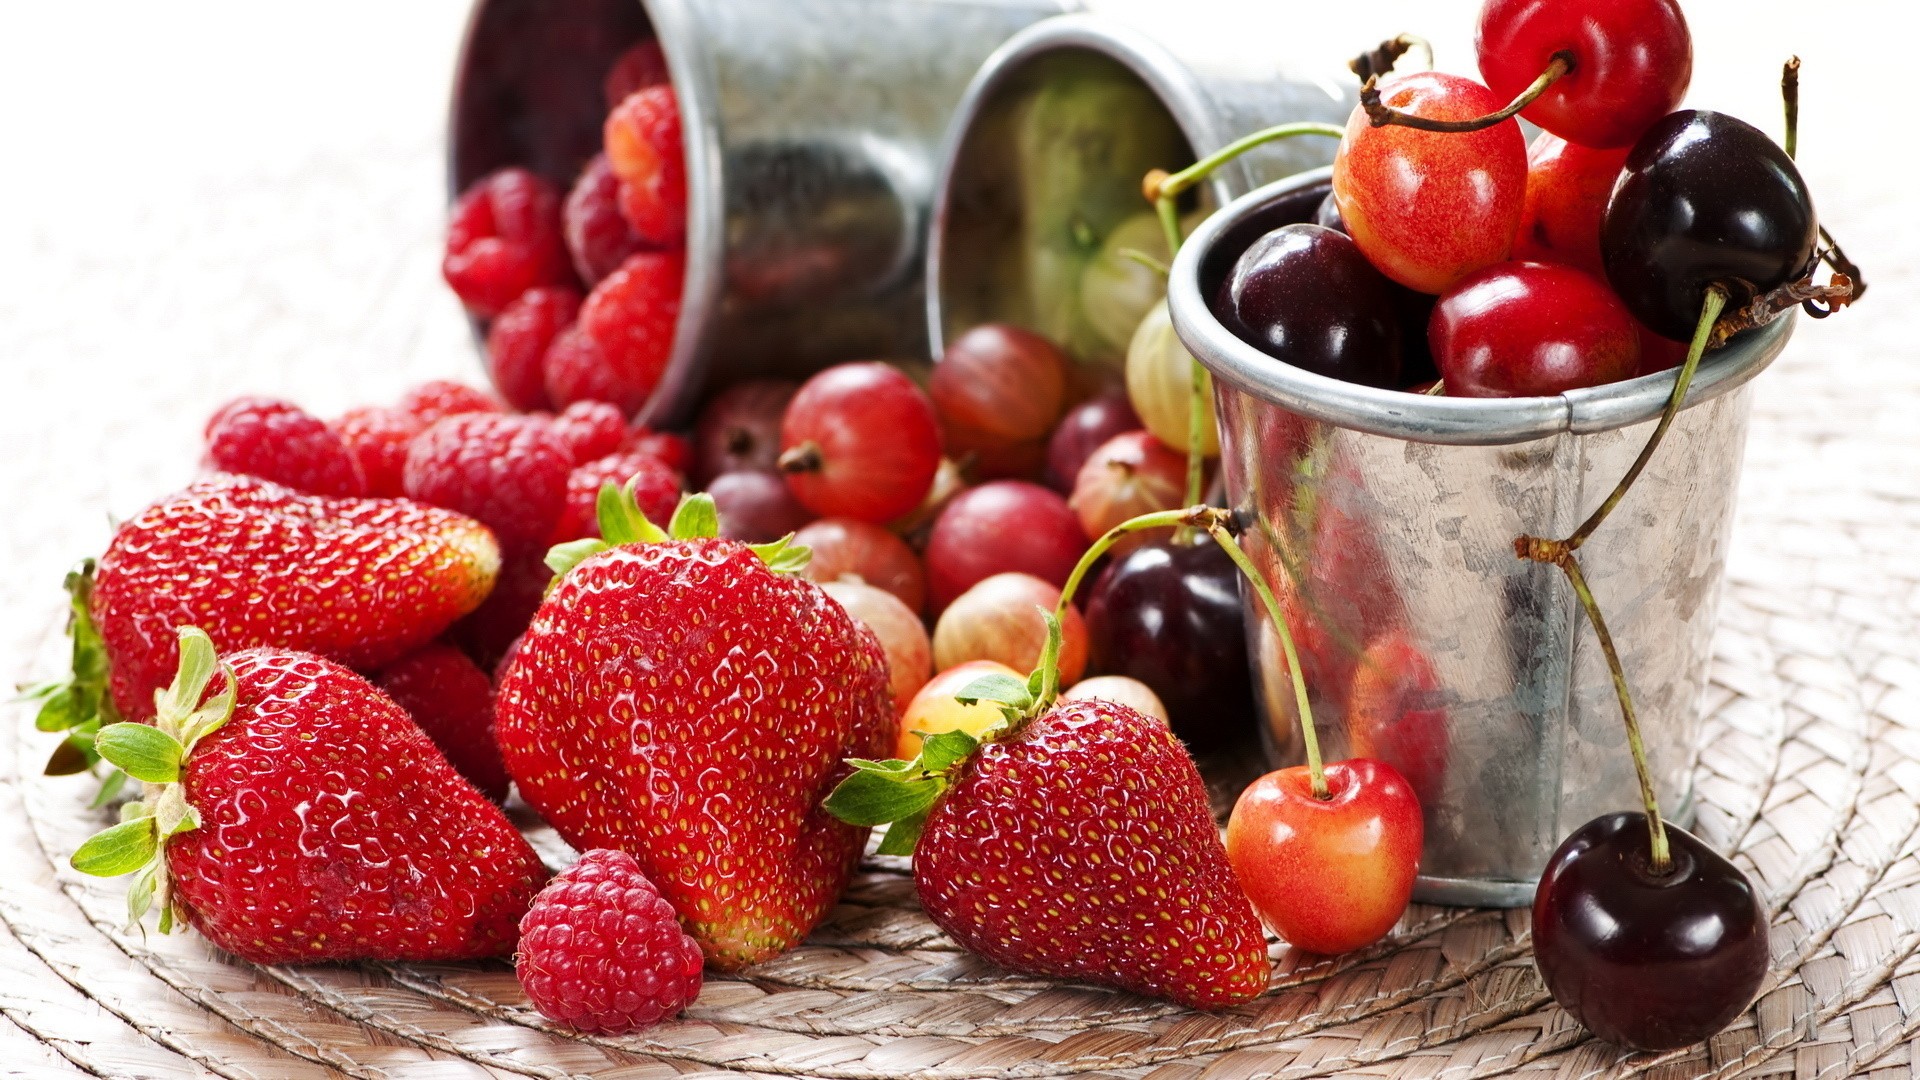 Edd magad egészségesre nyári gyümölcsökkel!